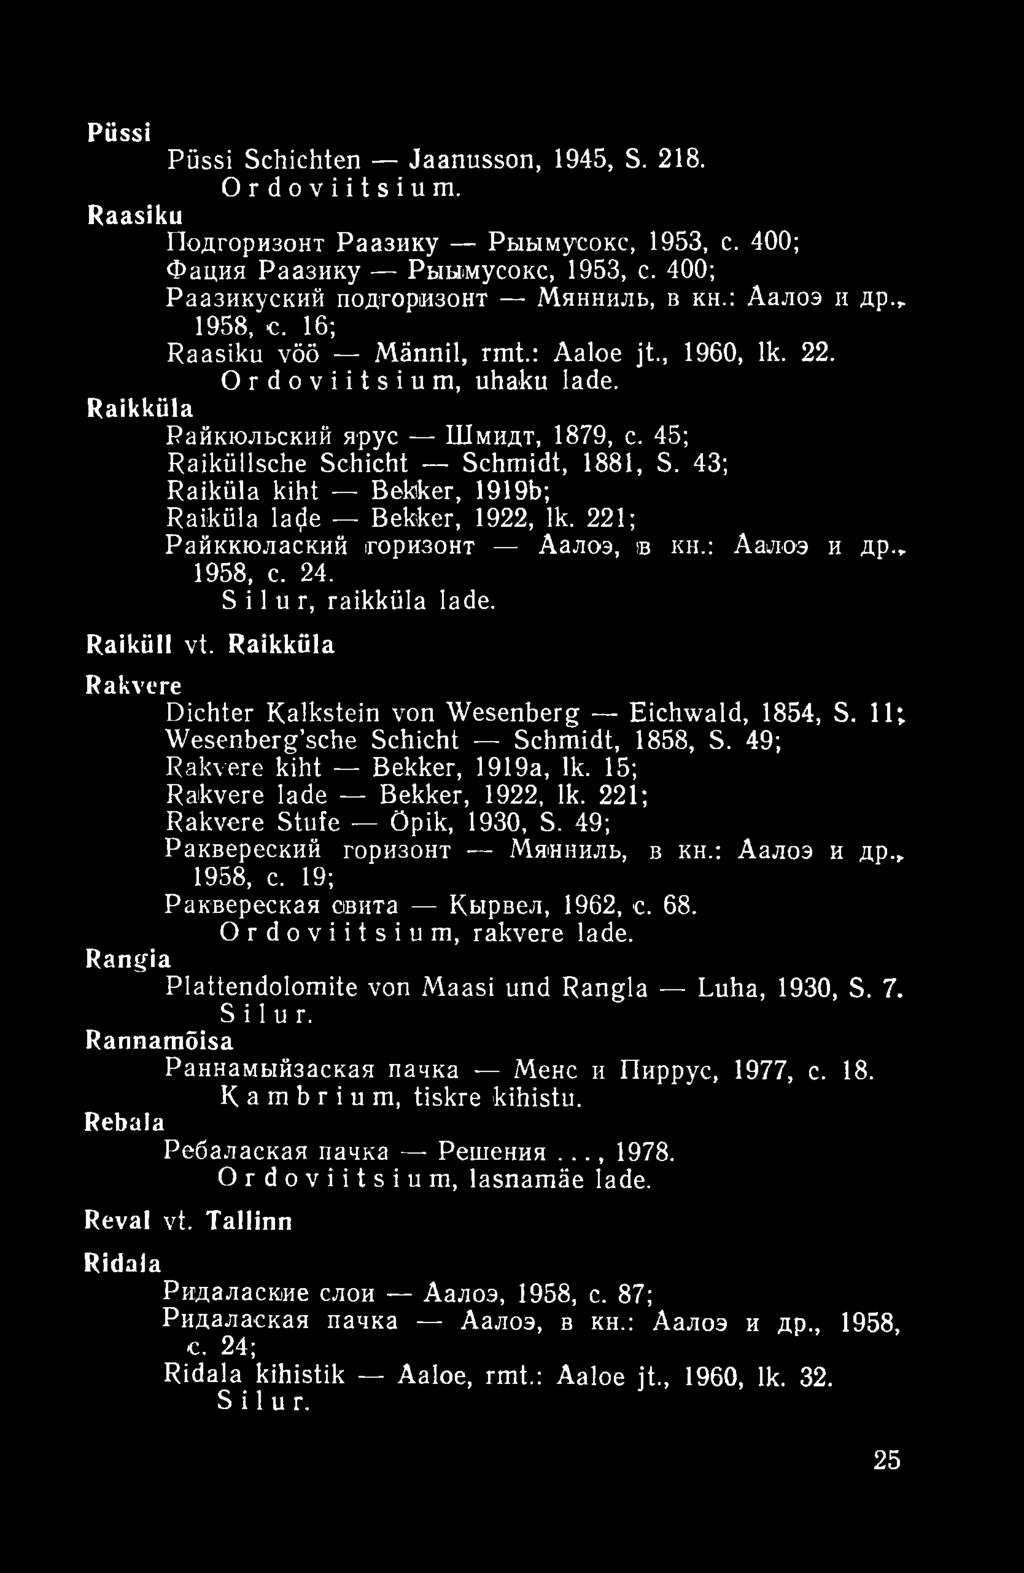 43; Raiküla kiht Bekker, 1919b; Raiküla latfe Bekker, 1922, lk. 221; Райккюлаский горизонт Аалоэ, в кн.: Аалоэ и др., 1958, с. 24. Silur, raikküla lade. Raiküll vt.